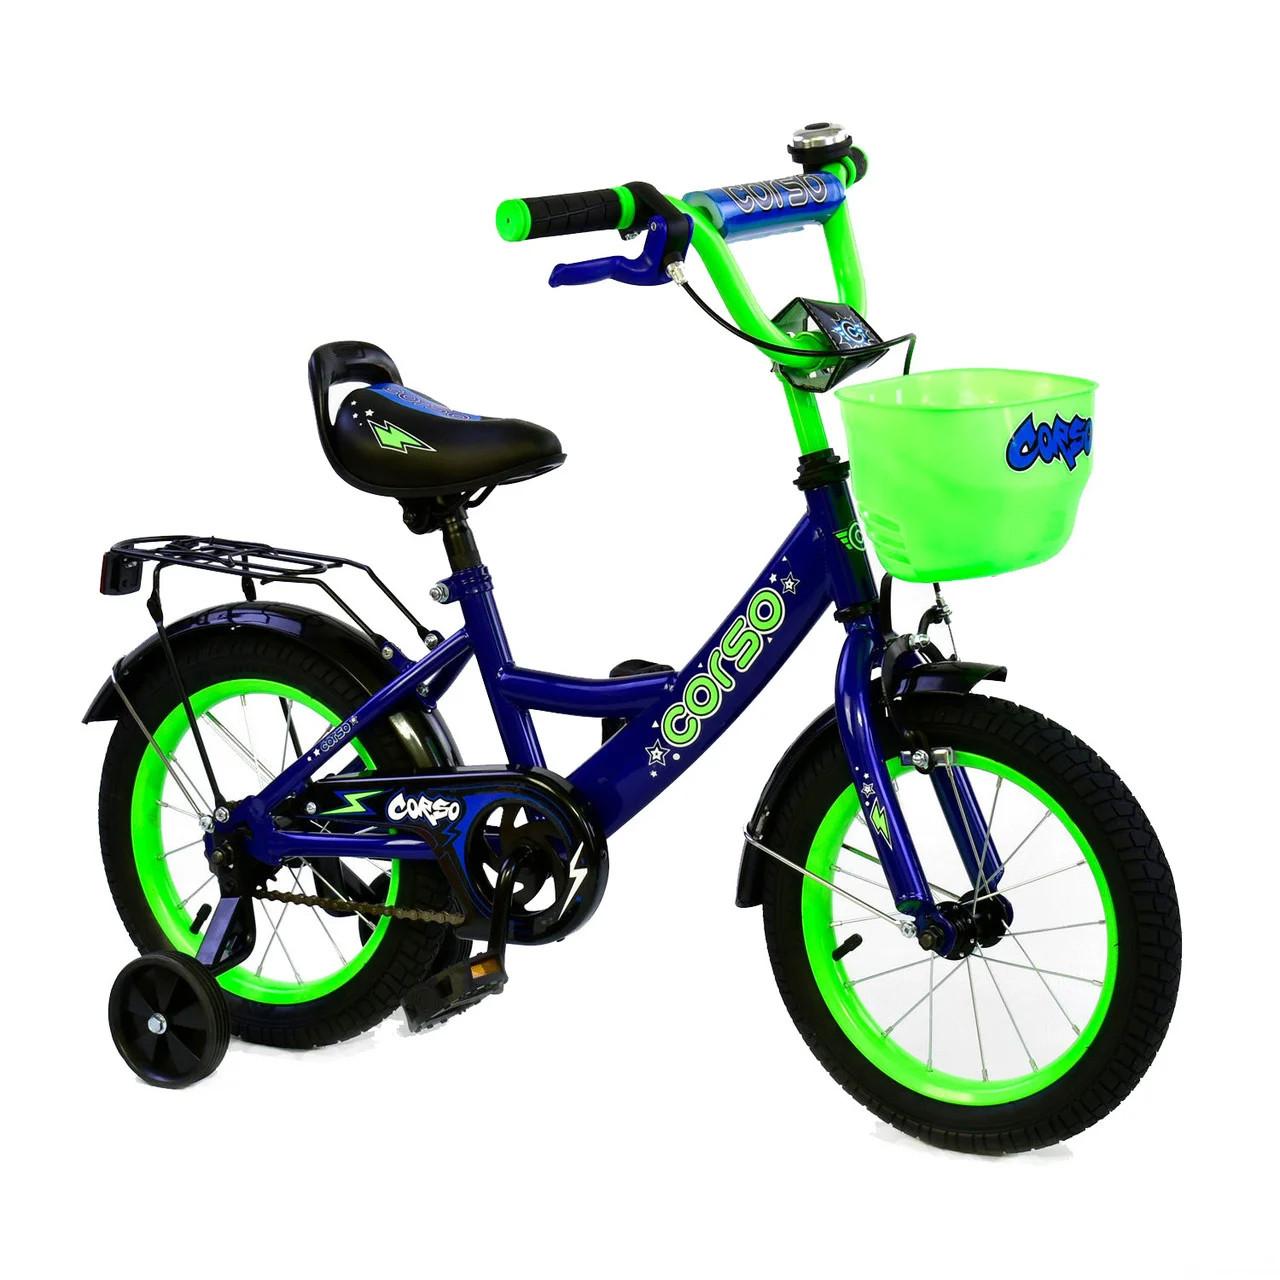 Велосипед Корсо 14 дюймов. Велосипед Corso 14 синий. Велосипед 14 дюймов синий. Велосипед синий двухколёсный.